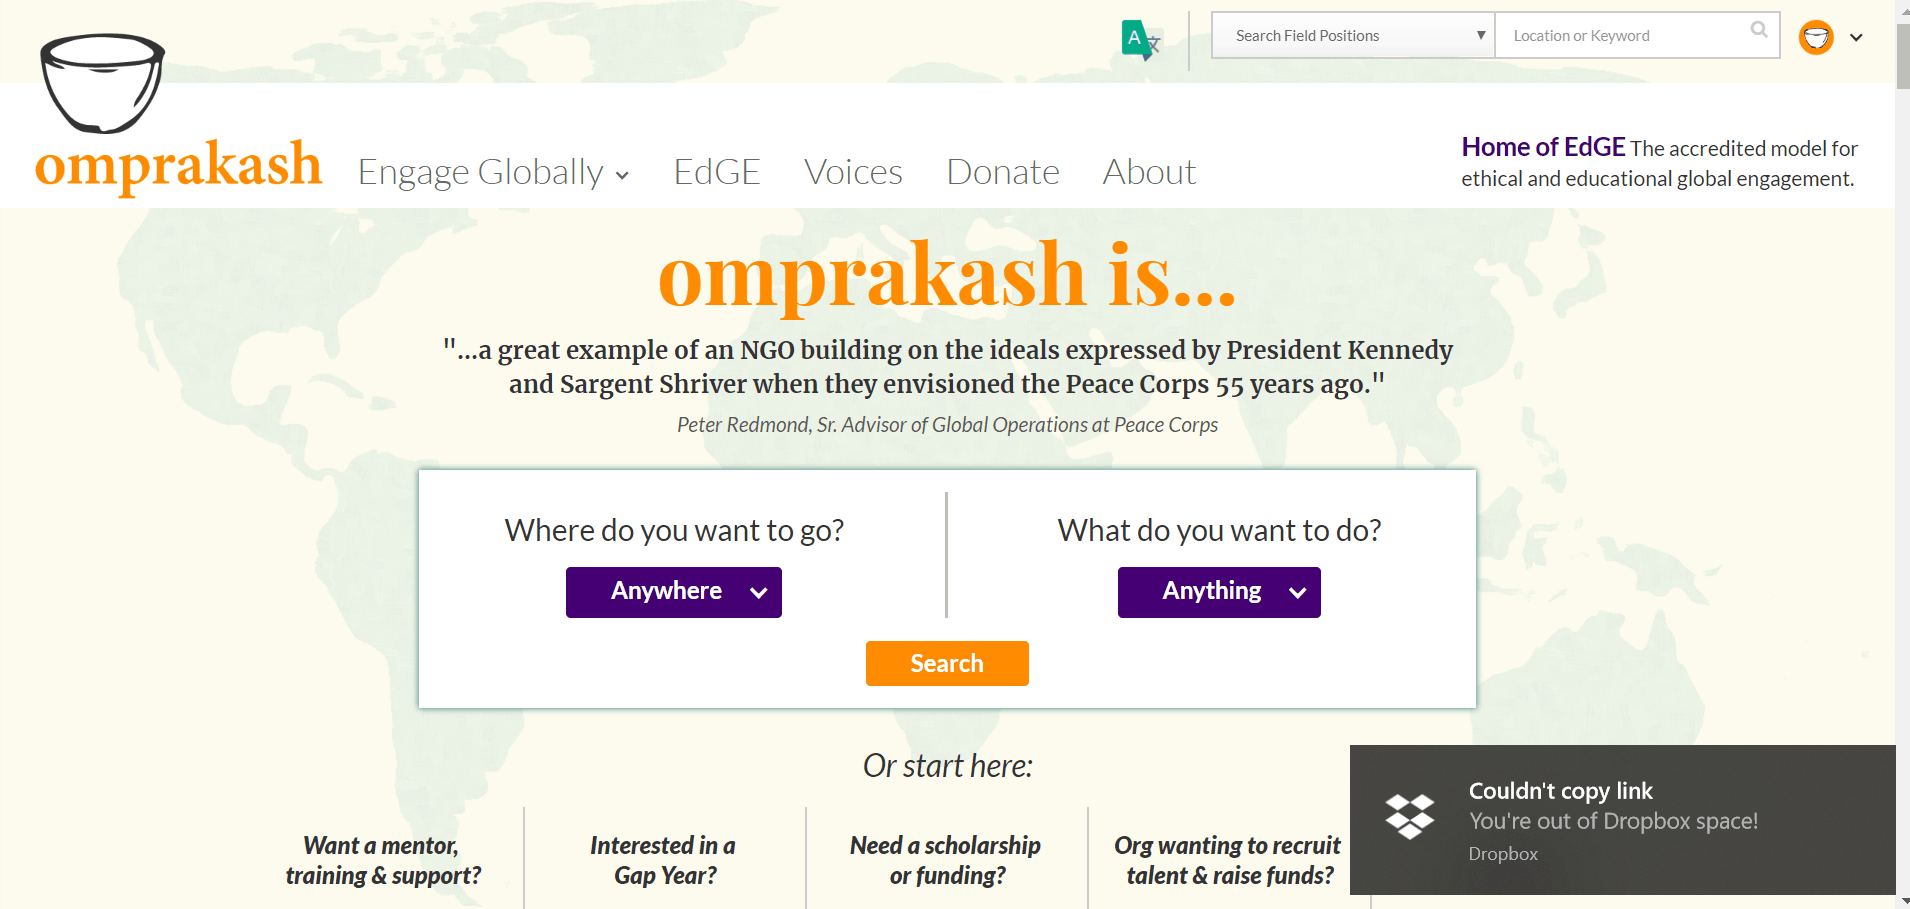 omprakash volunteer abroad organization travel free